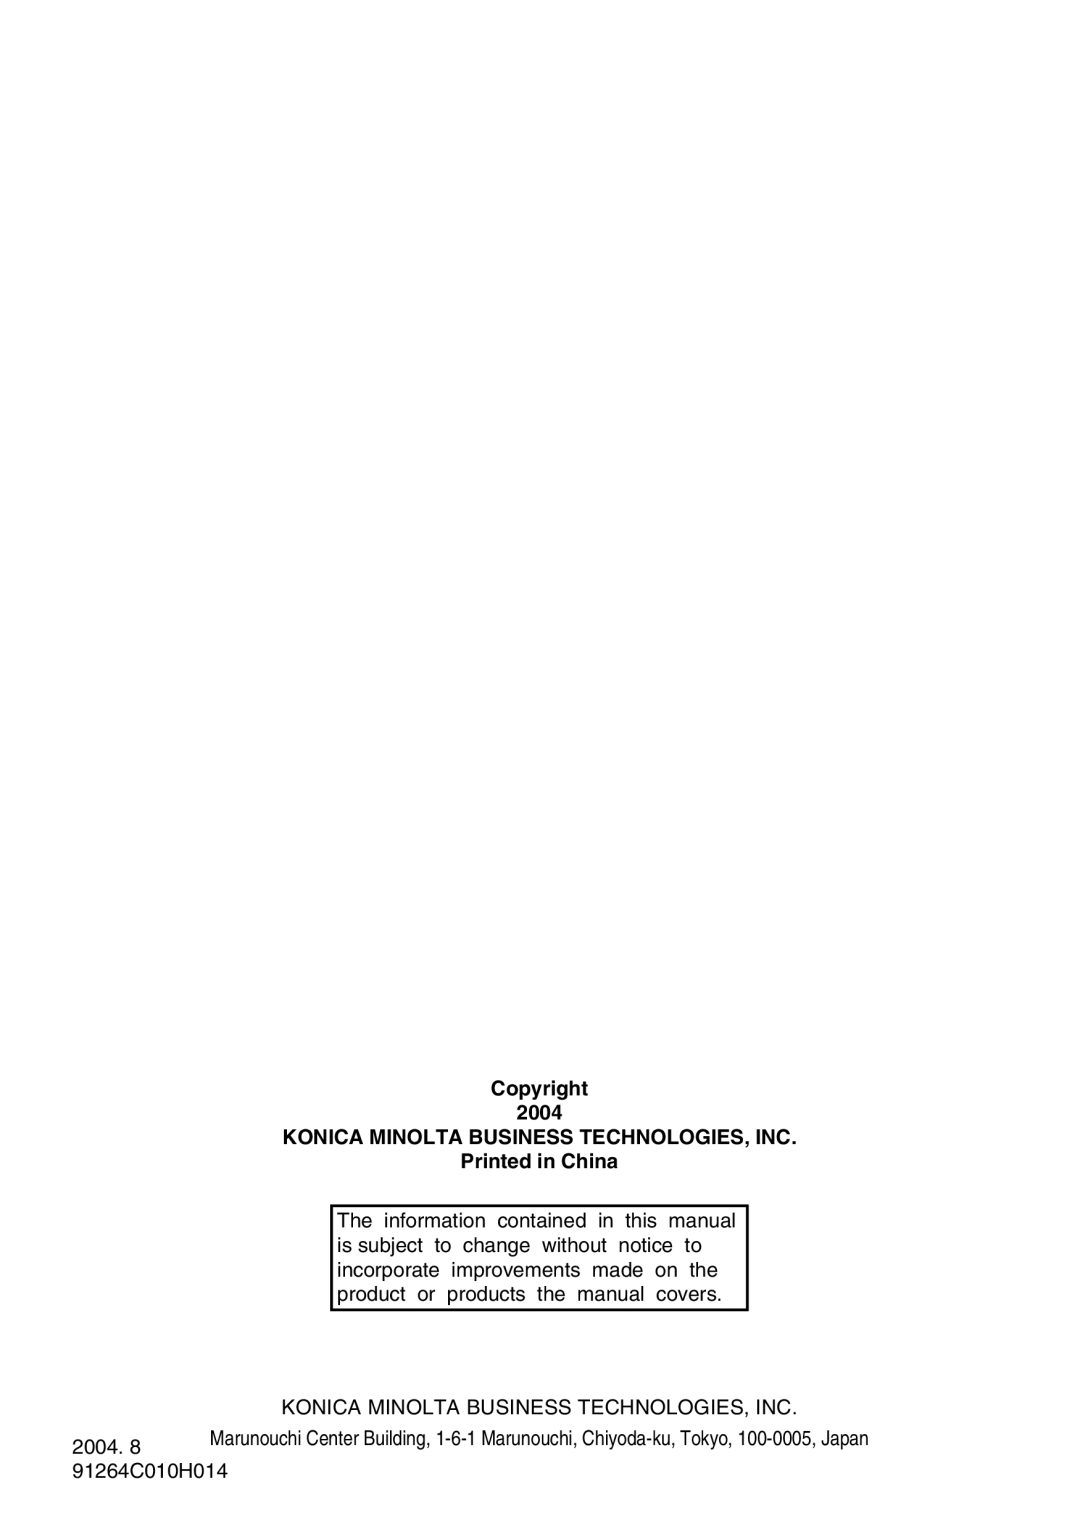 Konica Minolta Pi2001e, Pi1803e manual Copyright, Konica Minolta Business Technologies, Inc, 2004, 91264C010H014 